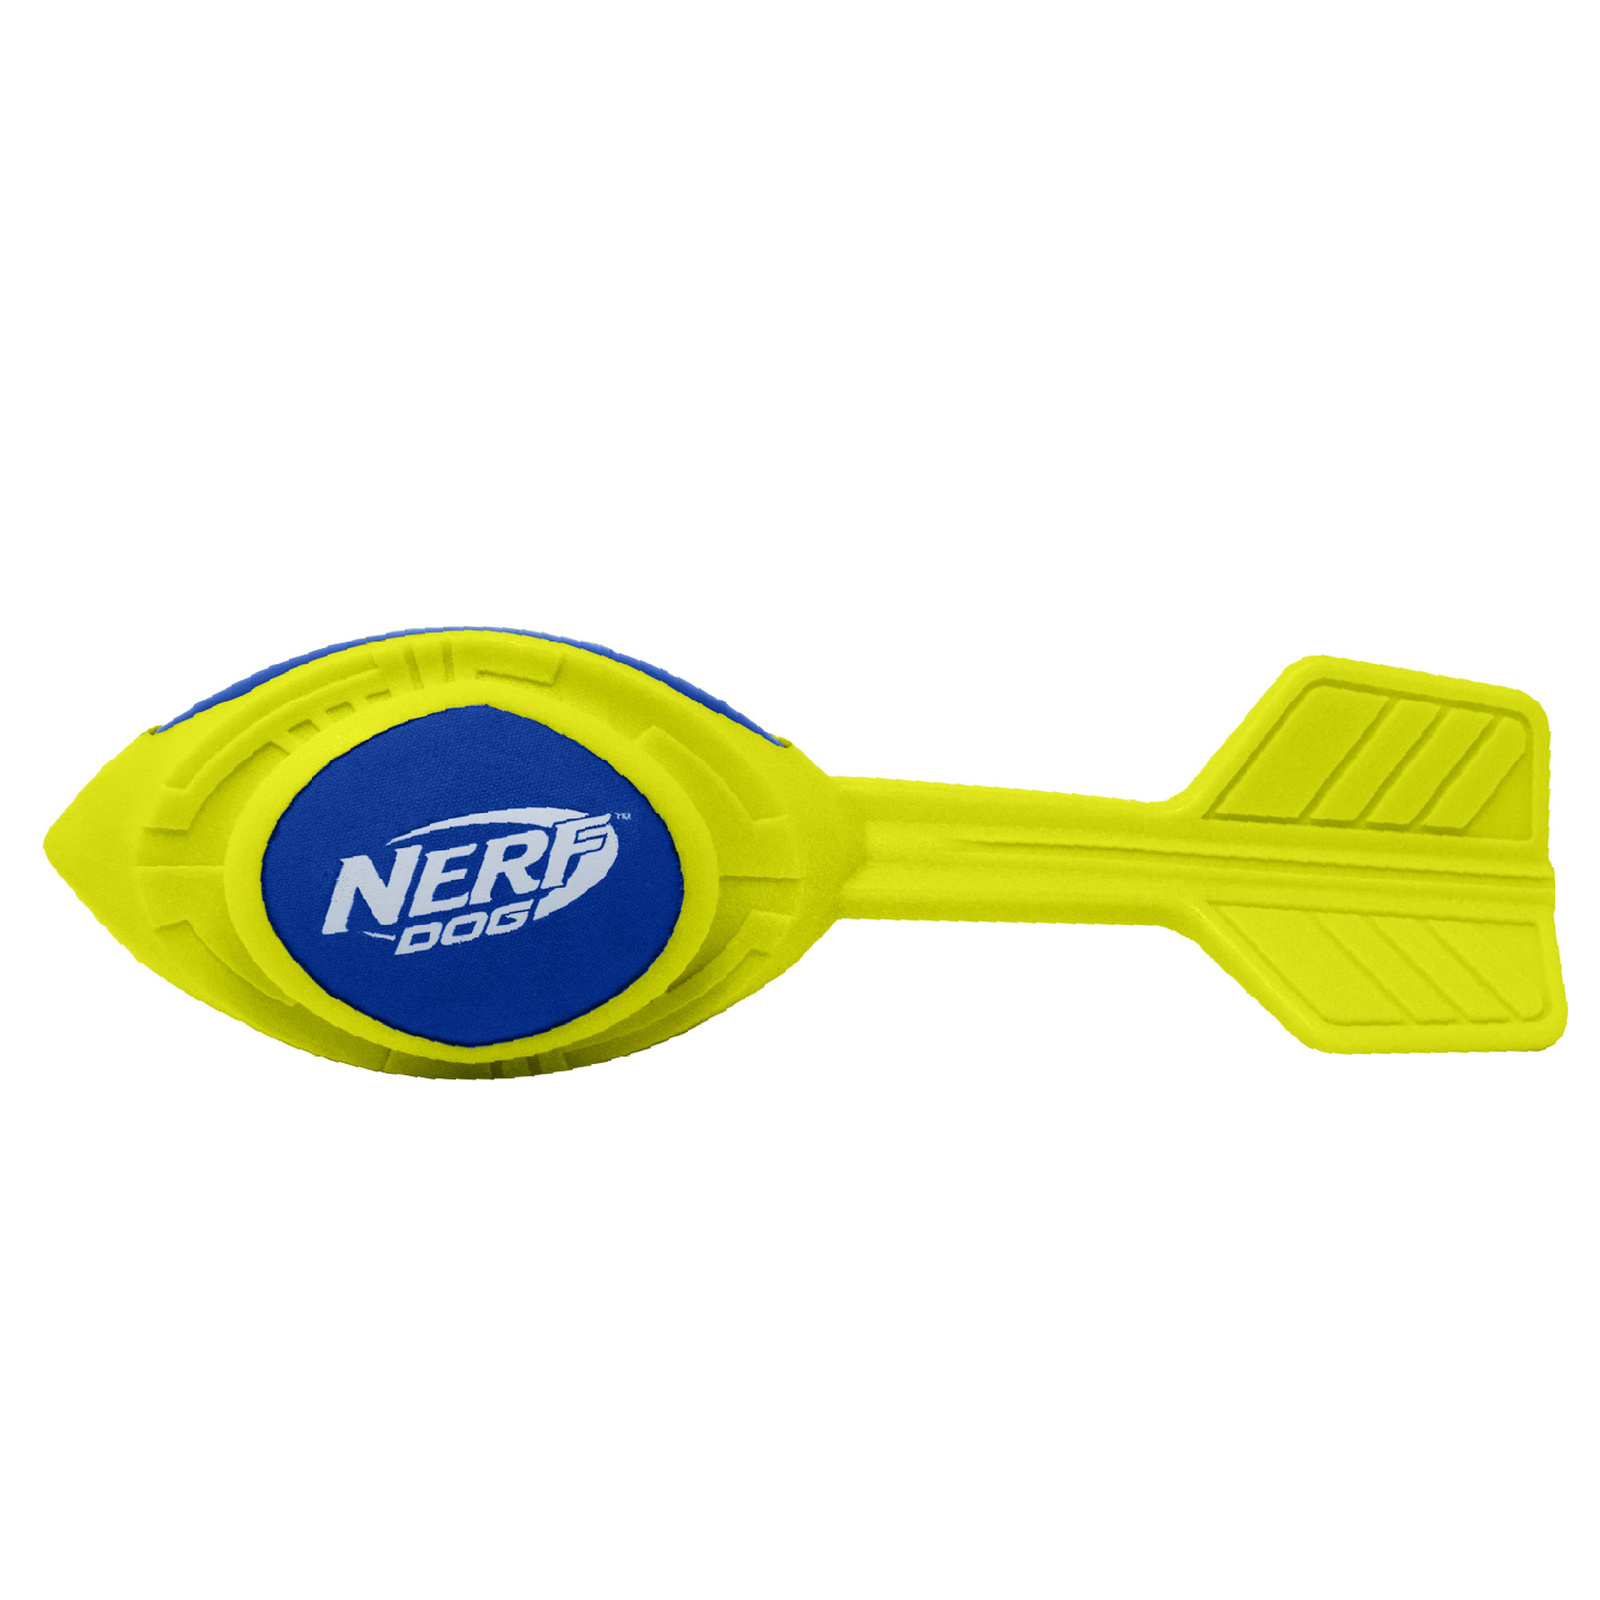 Nerf Nerf игрушка из вспененной резины 30 см (серия Мегатон) (290 г) nerf nerf снаряд из вспененной резины и термопластичной резины 30 см серия мегатон синий зеленый 290 г